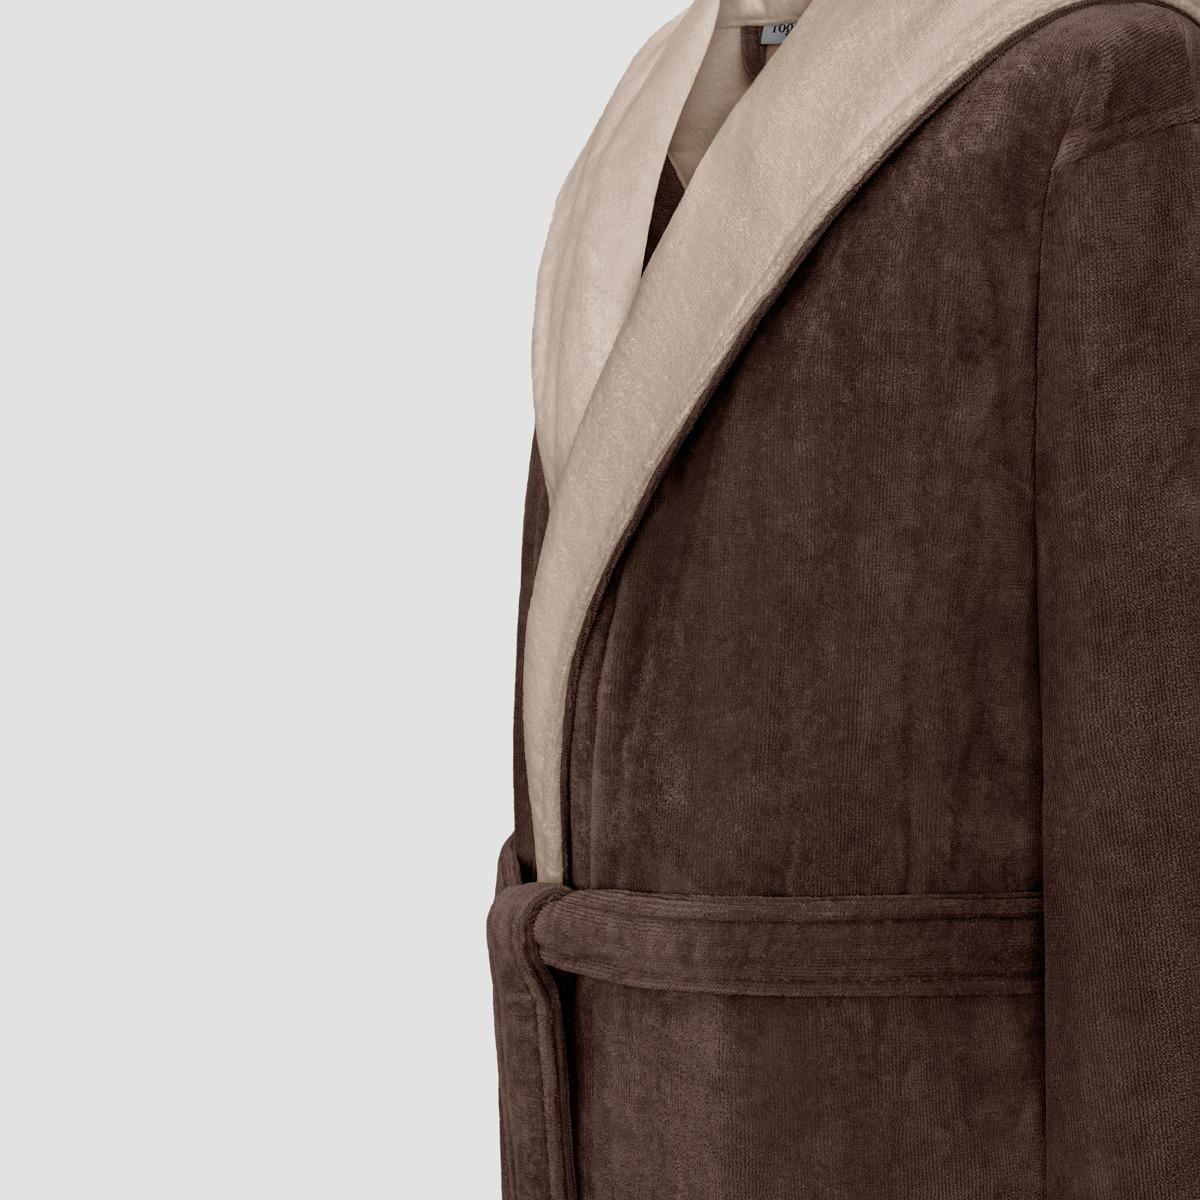 фото Халат togas арт лайн коричневый с бежевым m(48)